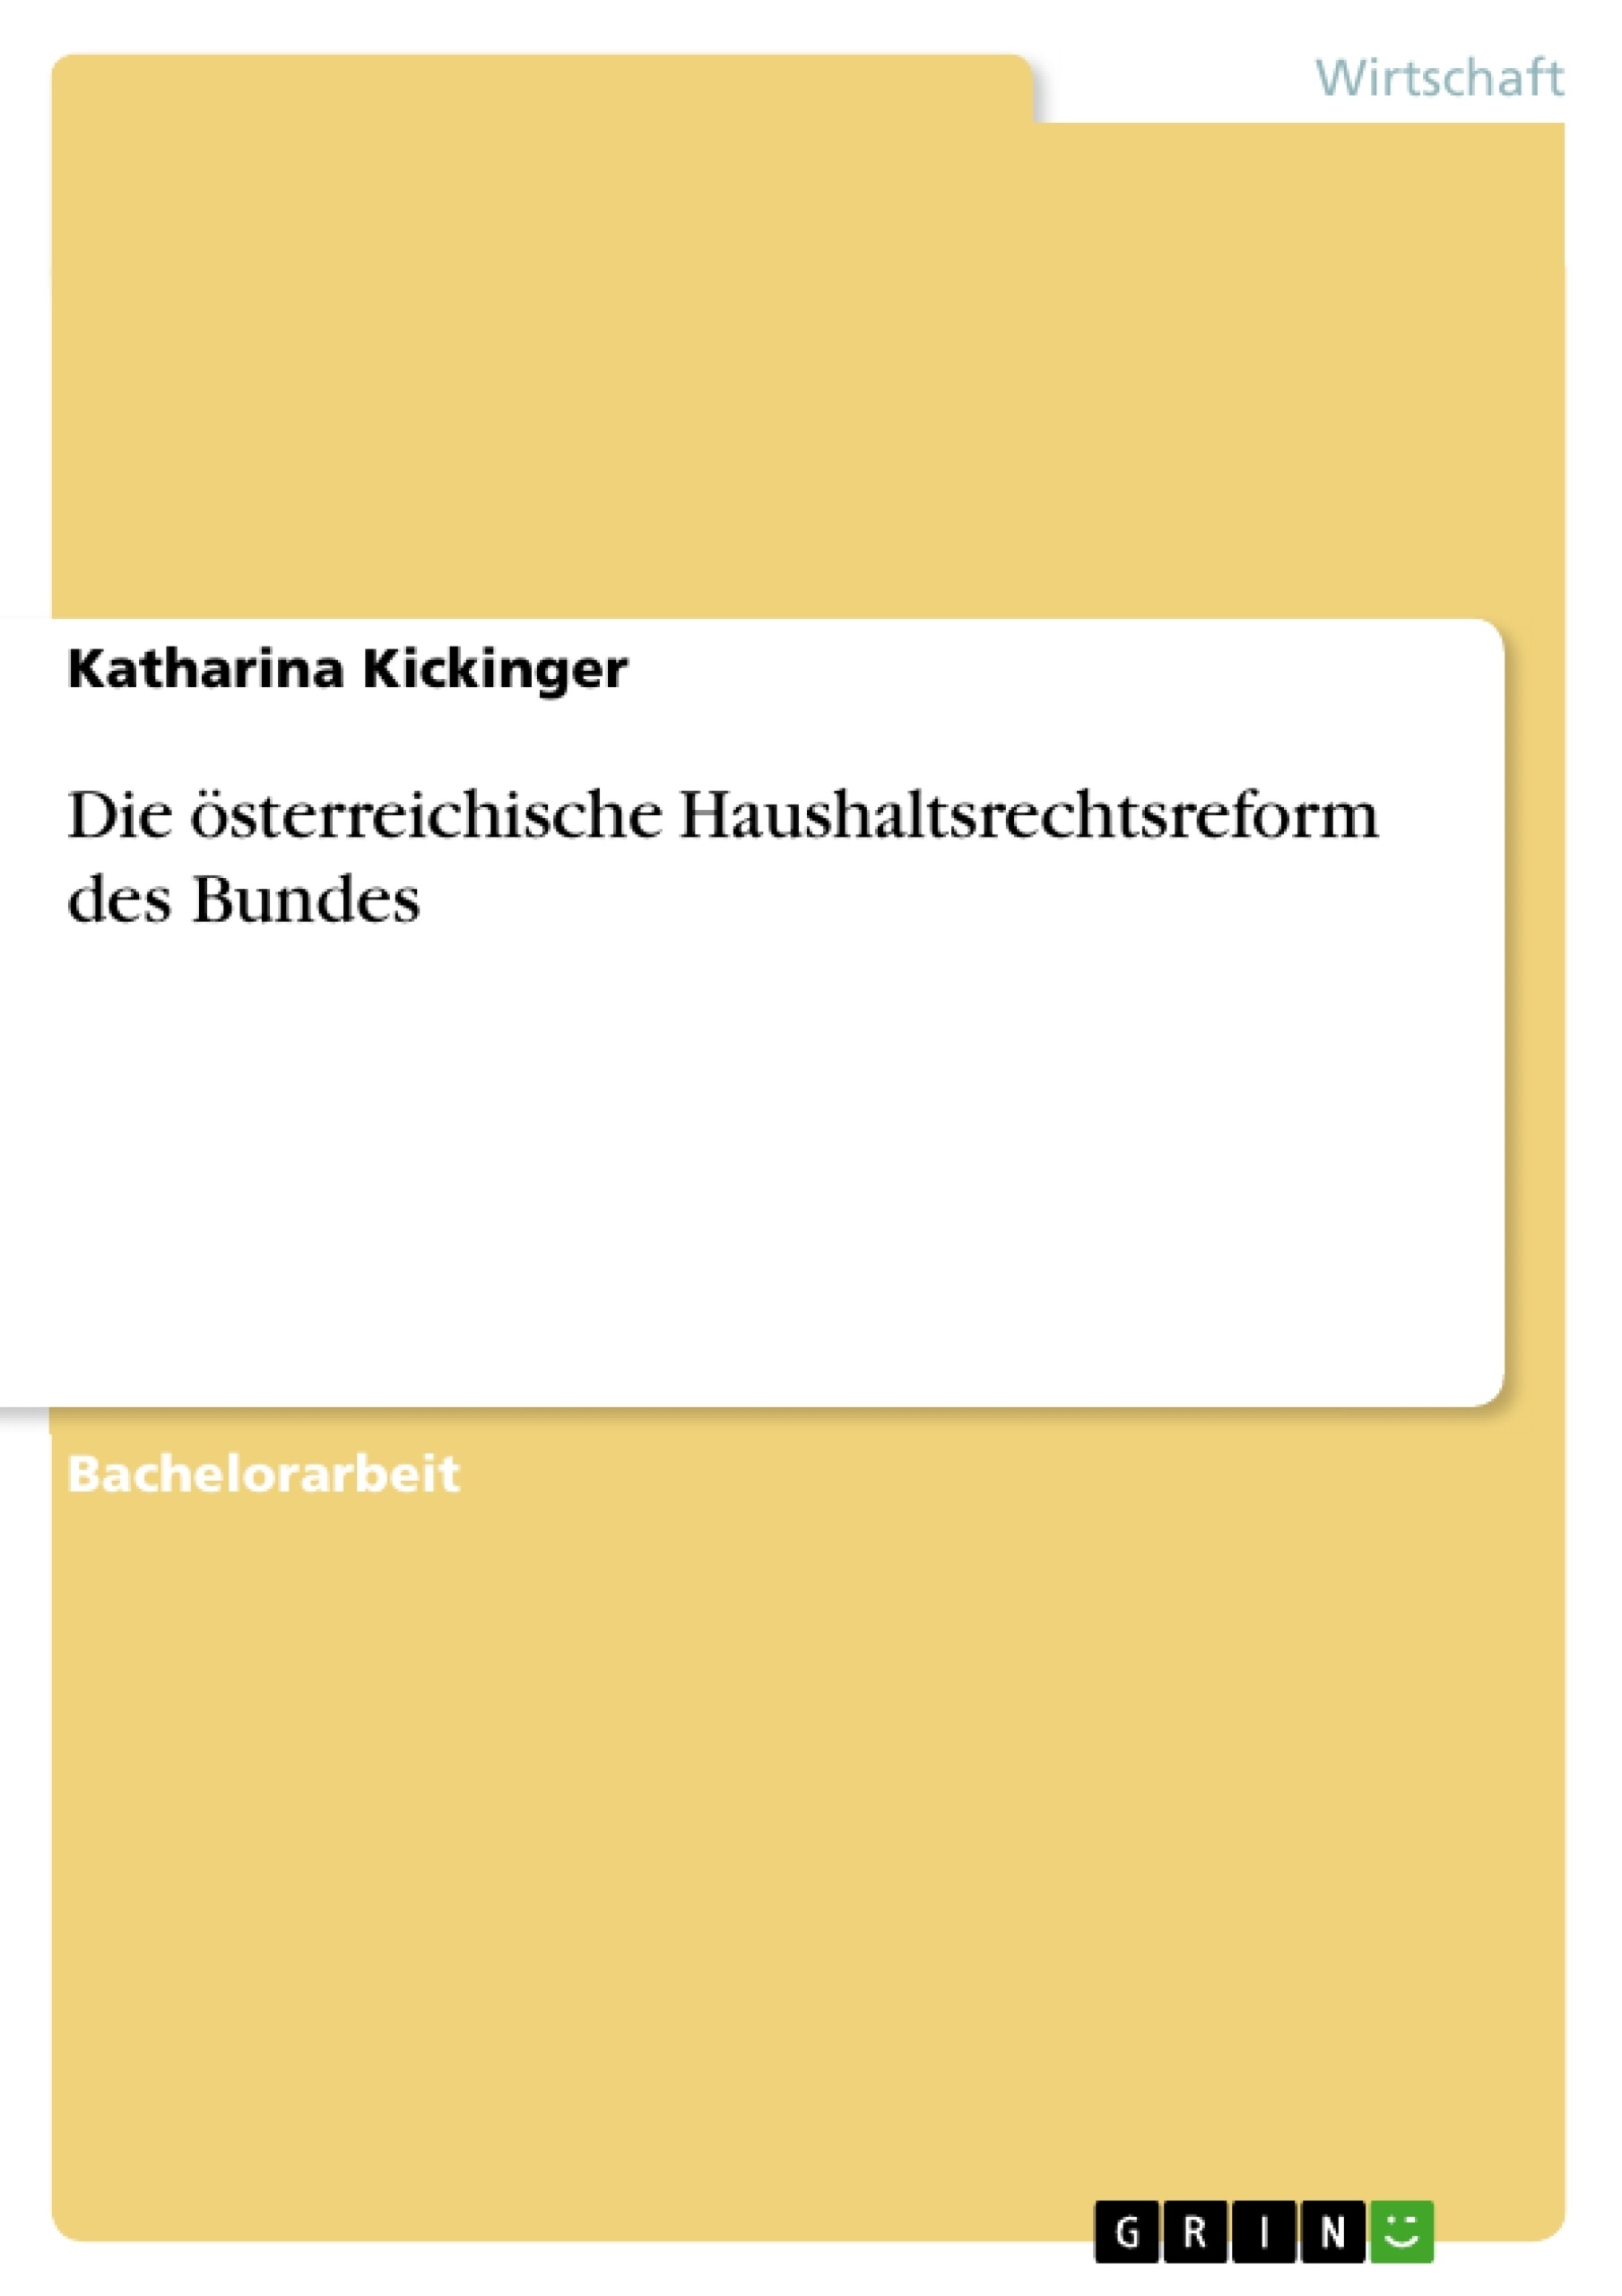 Título: Die österreichische Haushaltsrechtsreform des Bundes